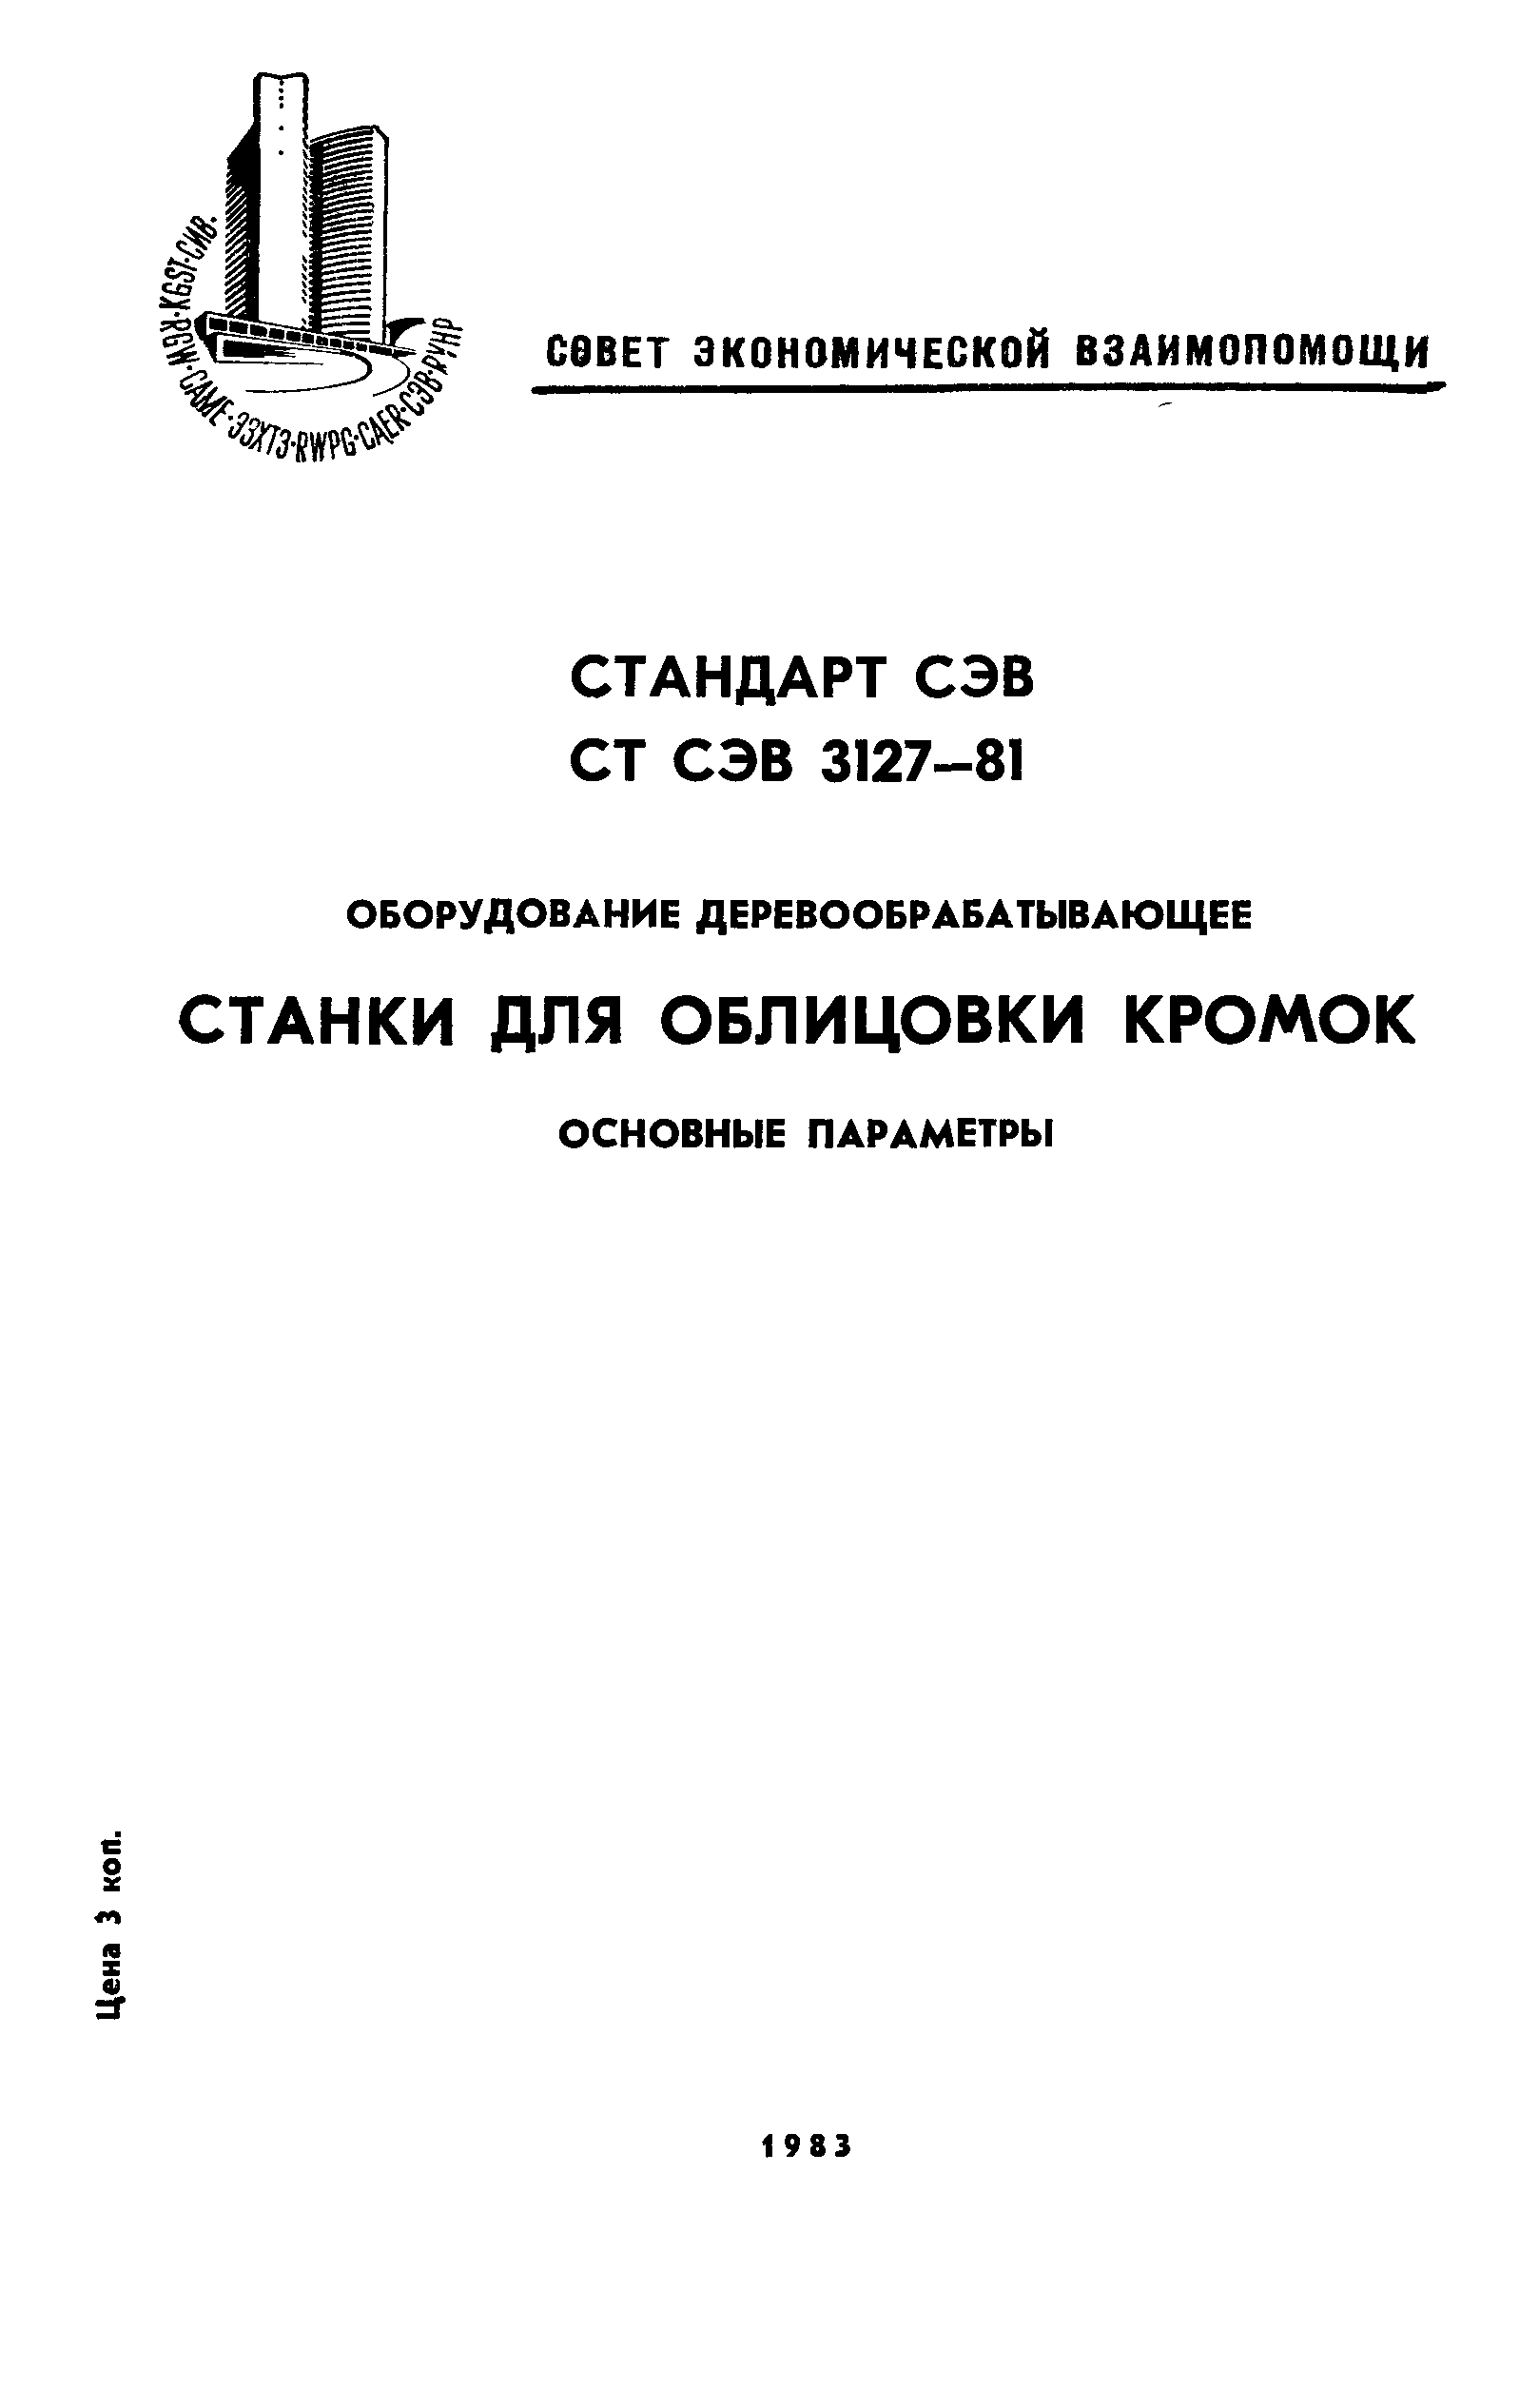 СТ СЭВ 3127-81